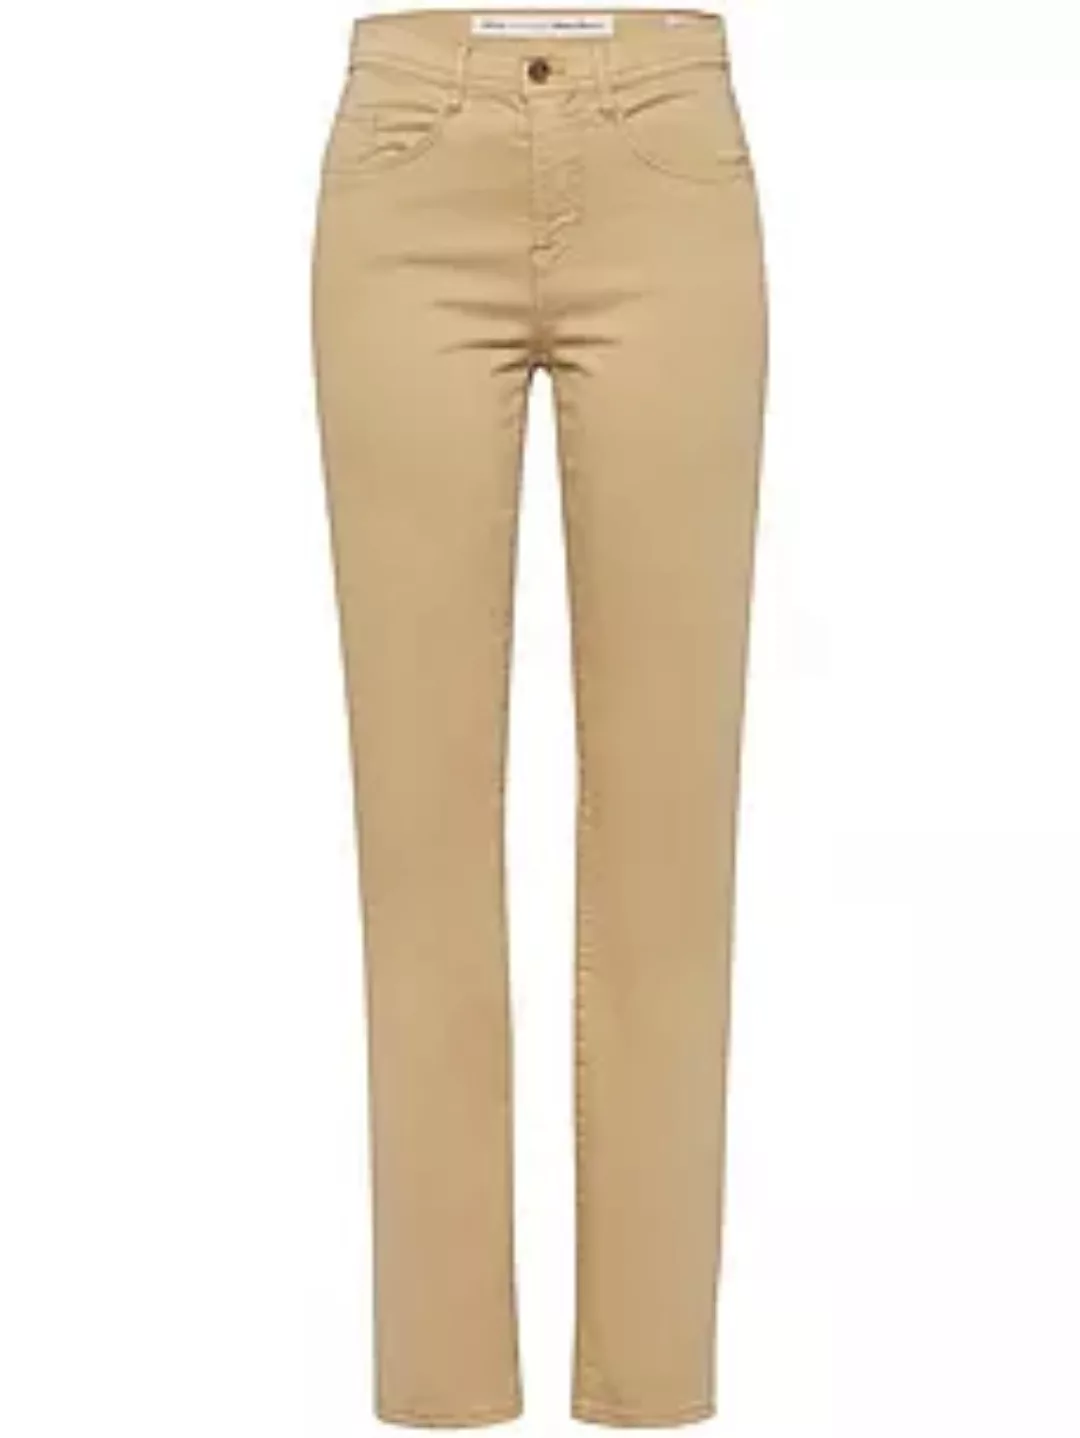 Jeans Modell Nicola Brax Feel Good braun günstig online kaufen